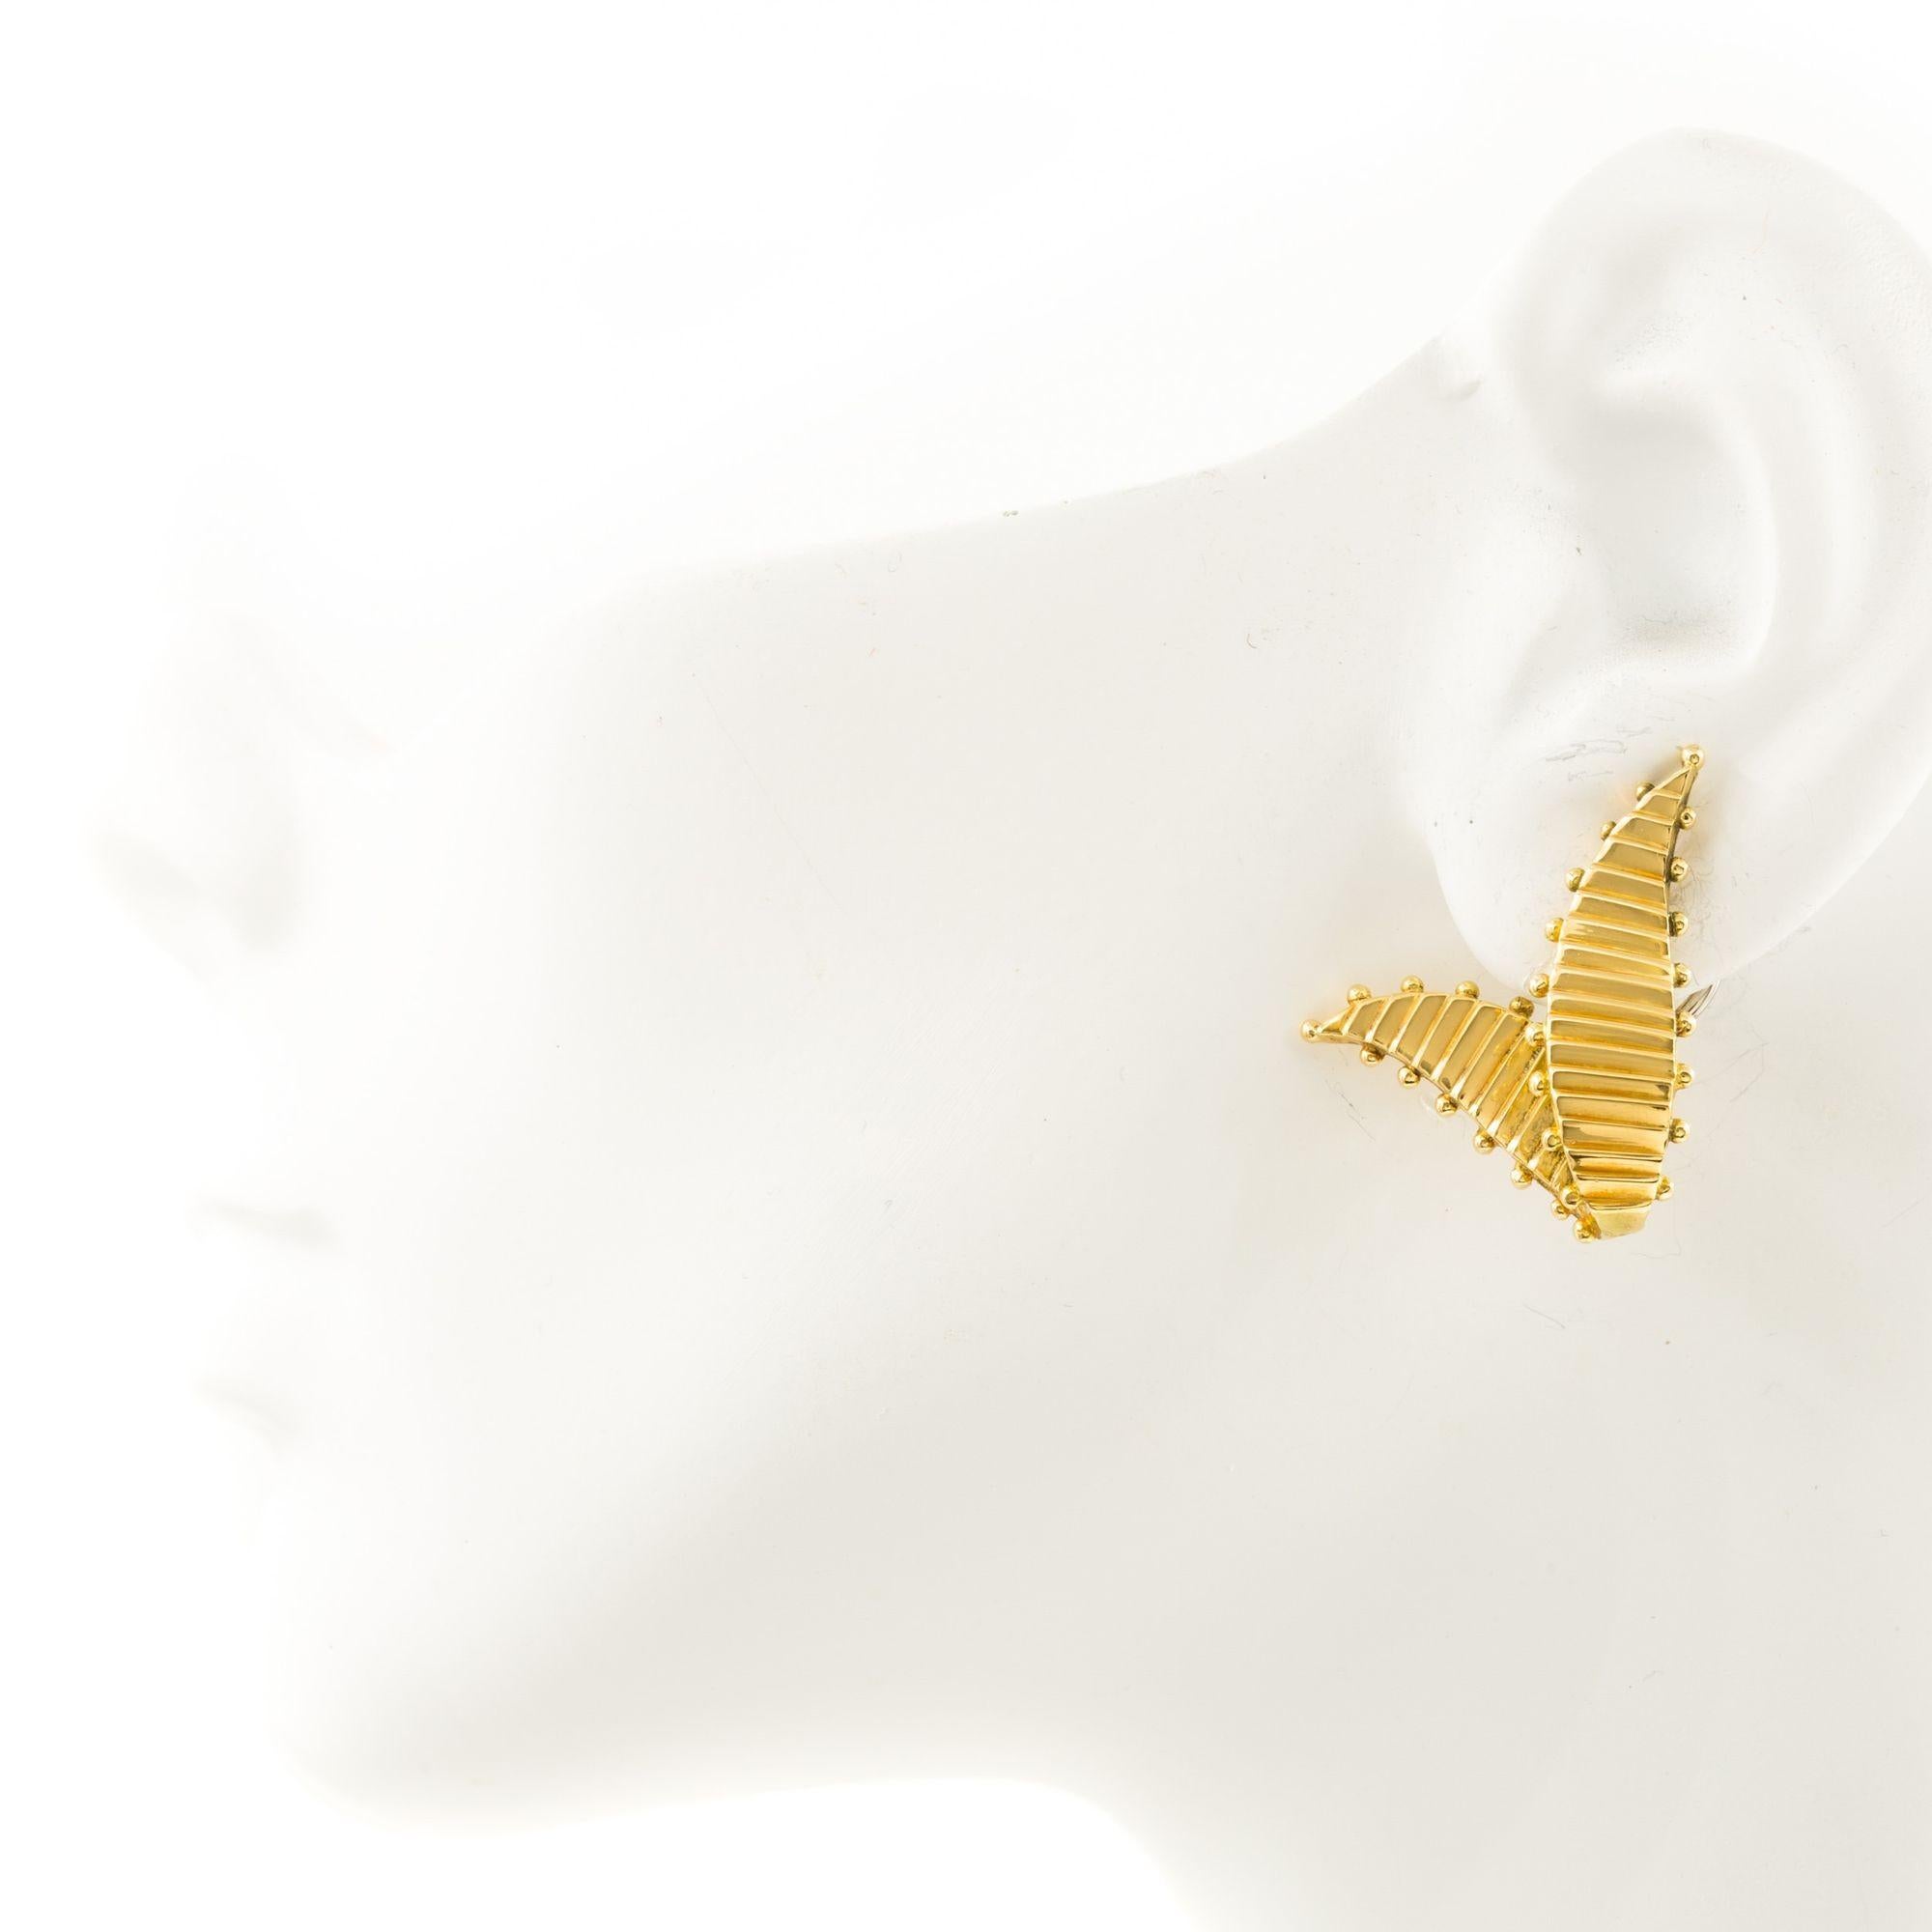 Paire de boucles d'oreilles V en or jaune 18K
Article # C104607

Paire de boucles d'oreilles en or jaune 18 carats, en forme de 